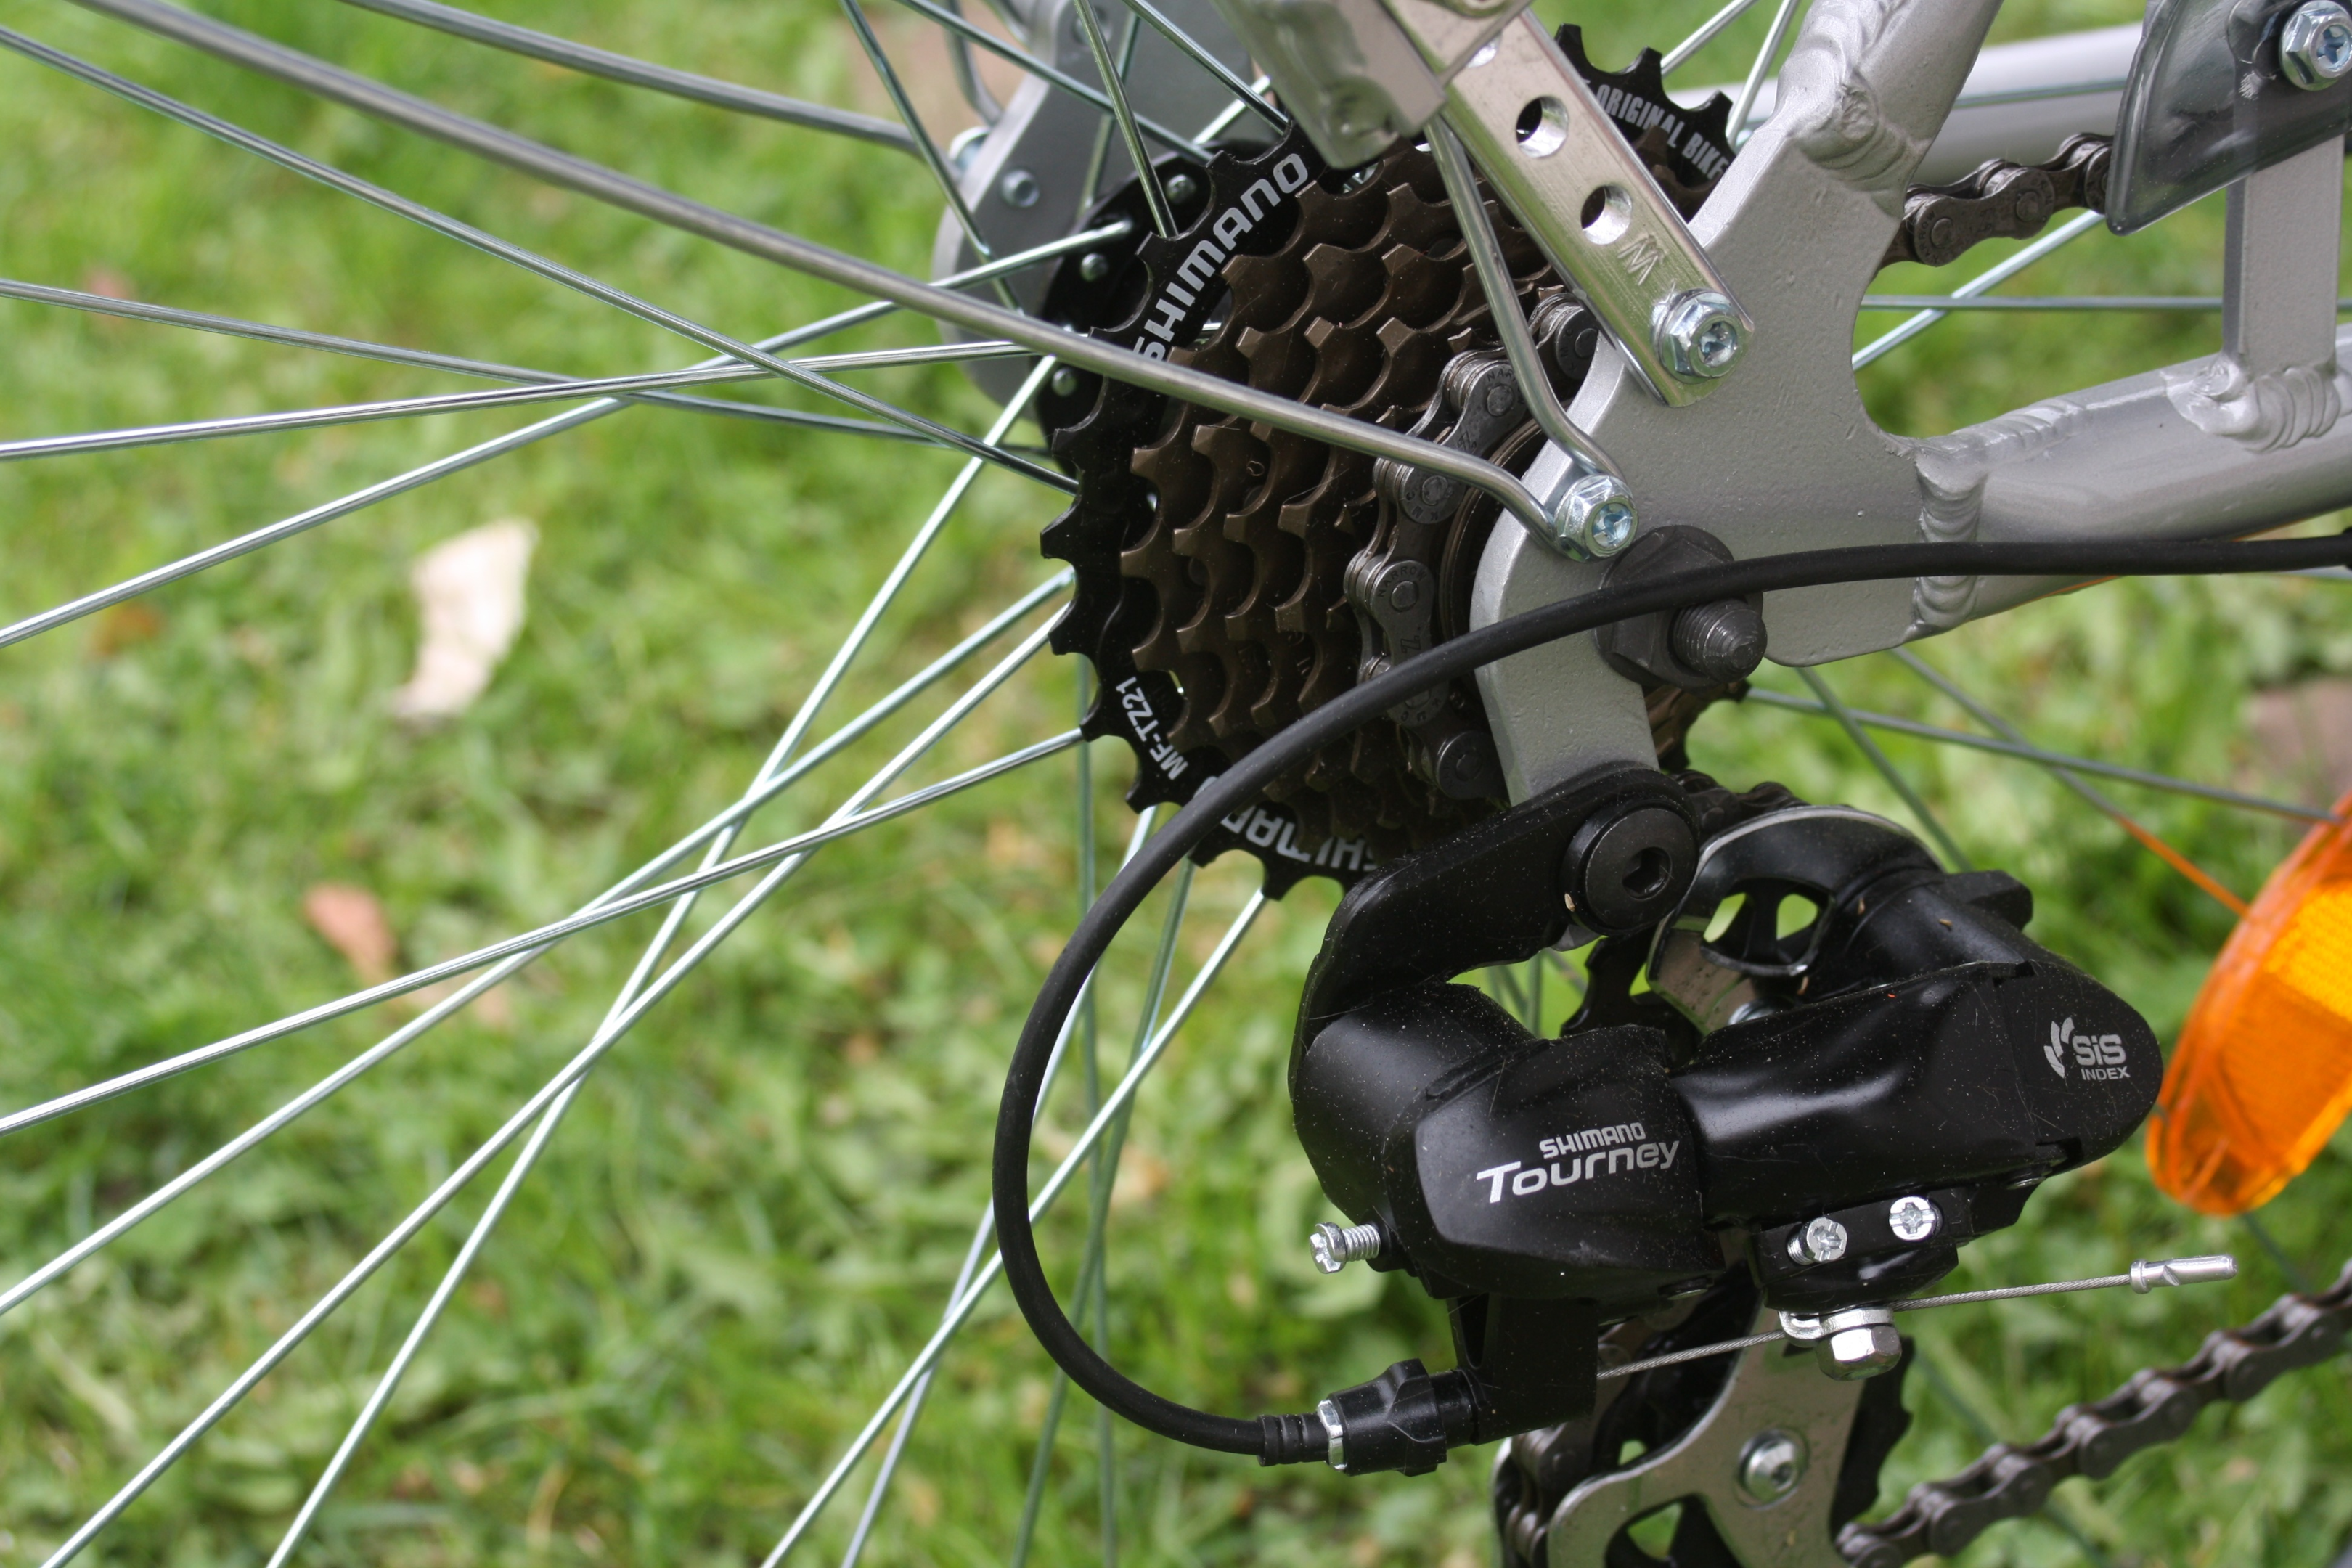 Bicicleta com corrente e câmbio Shimano Tourney. Foto retirada do site Pxhere.